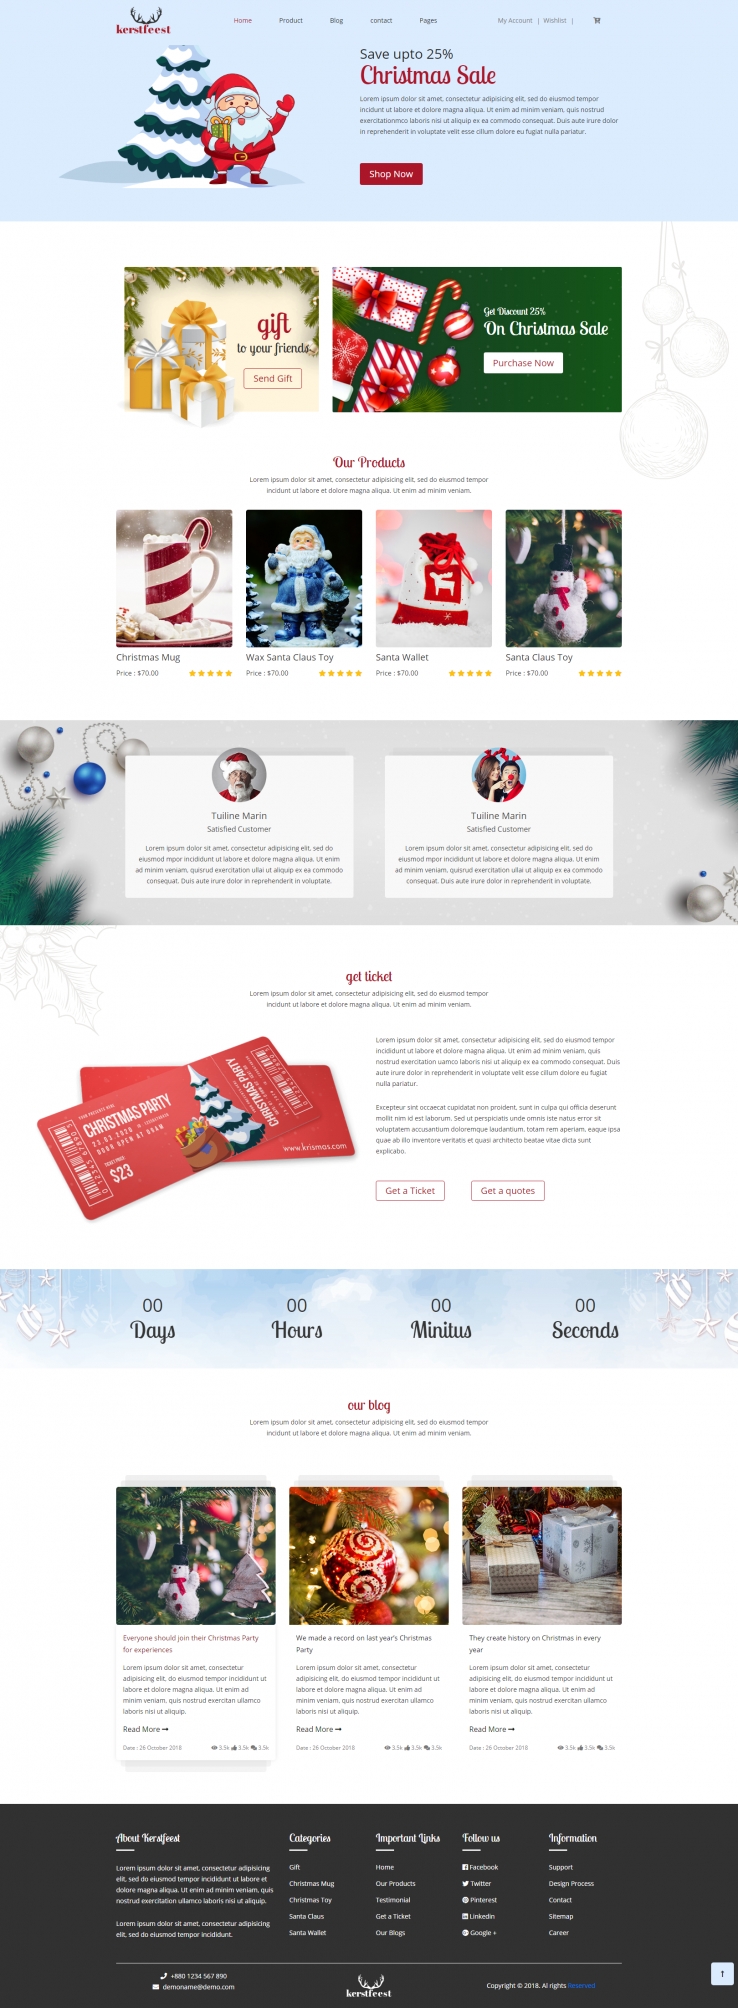 红色扁平风格的圣诞节主题商城网站源码下载